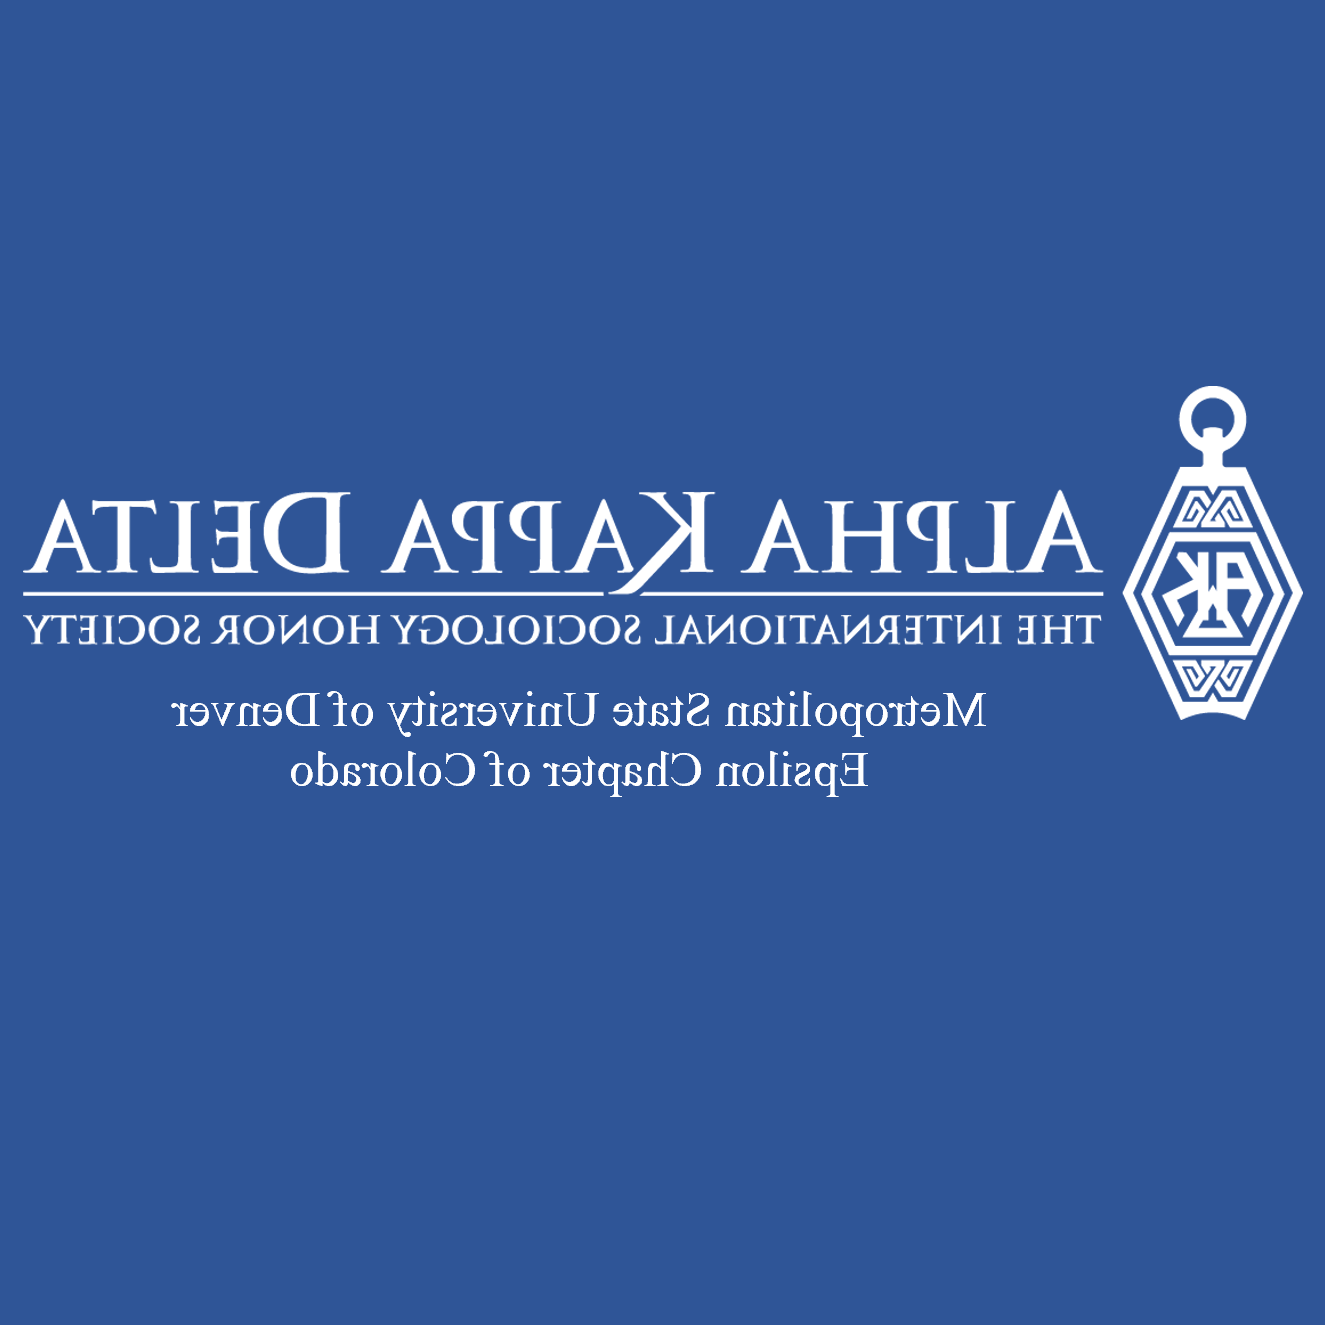 Alpha Kappa Delta国际社会学荣誉协会标志